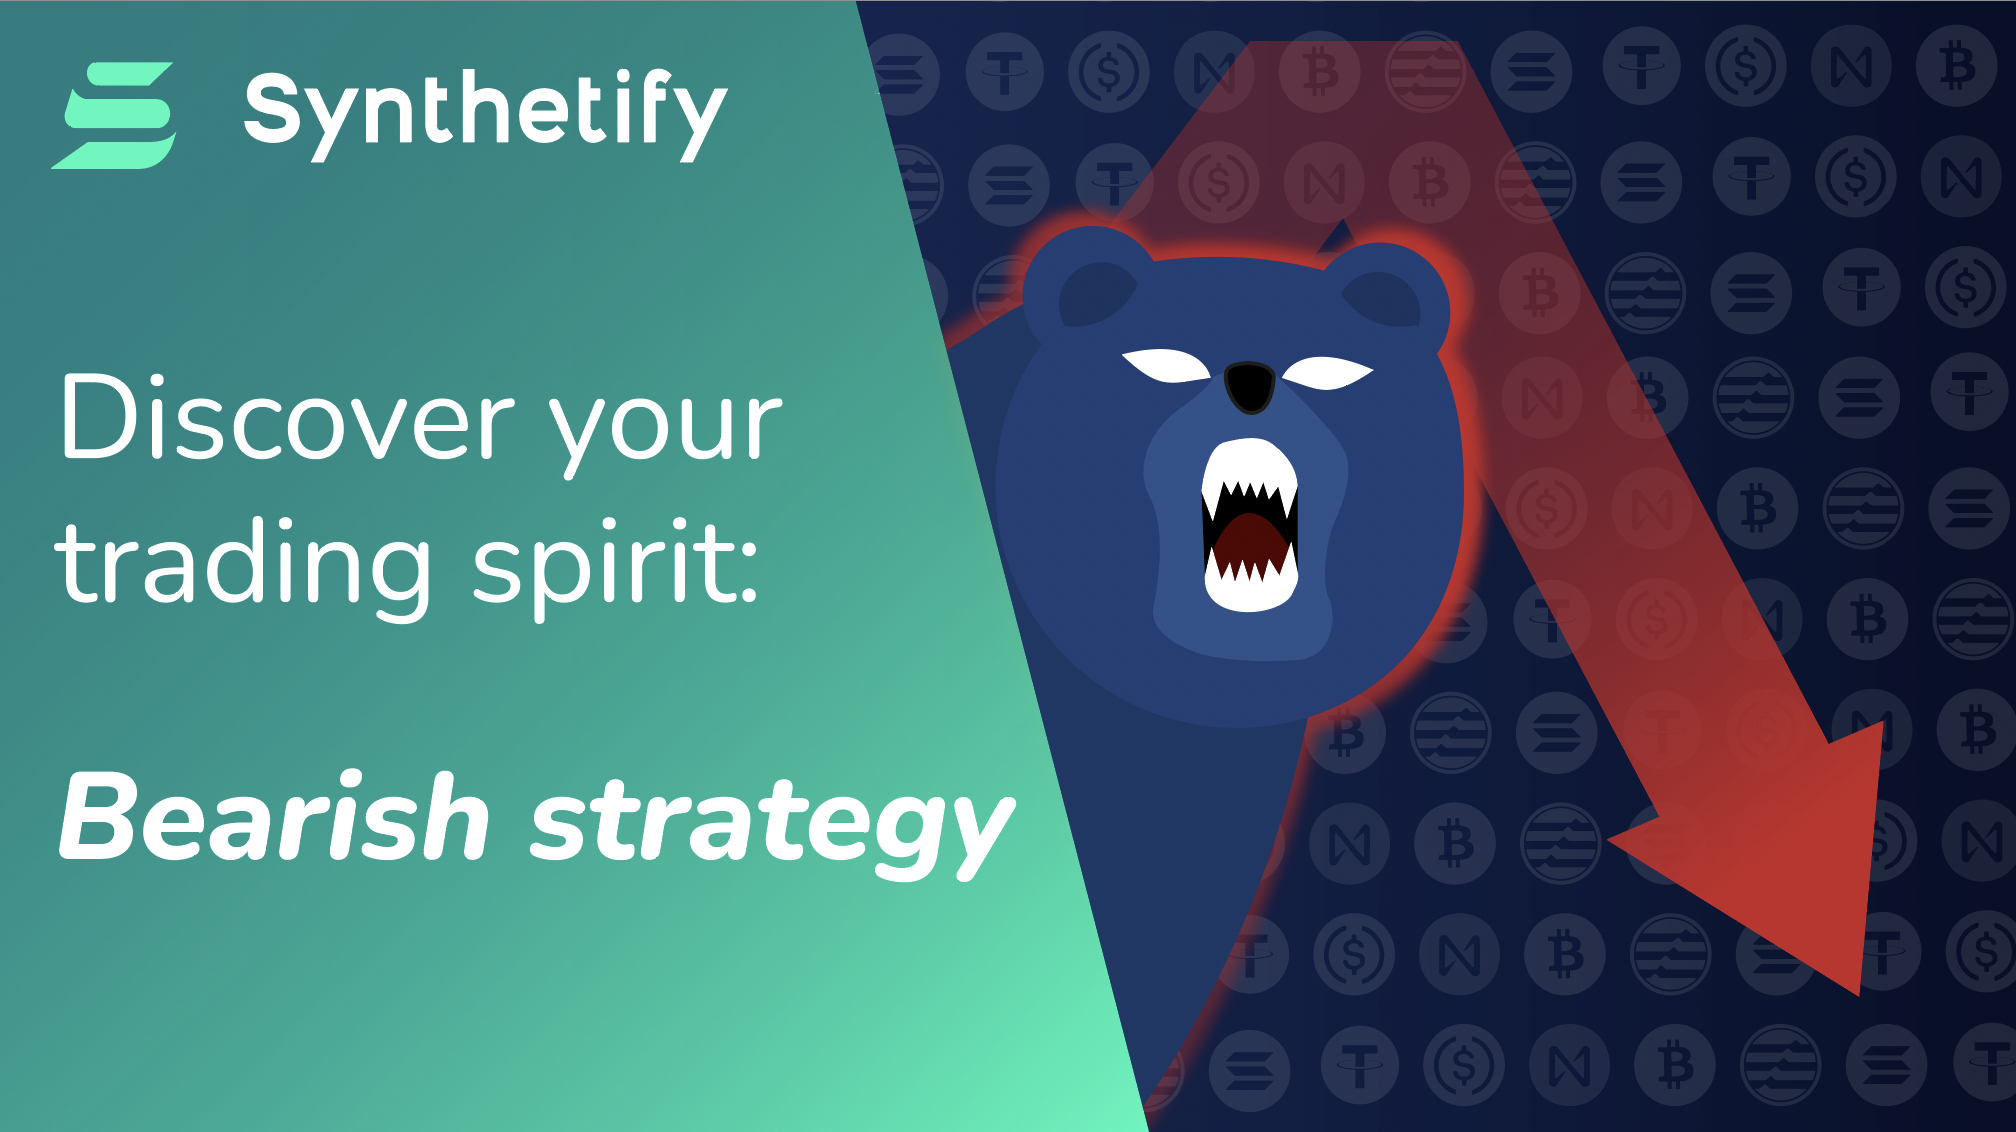 Bearish strategy using Synthetify